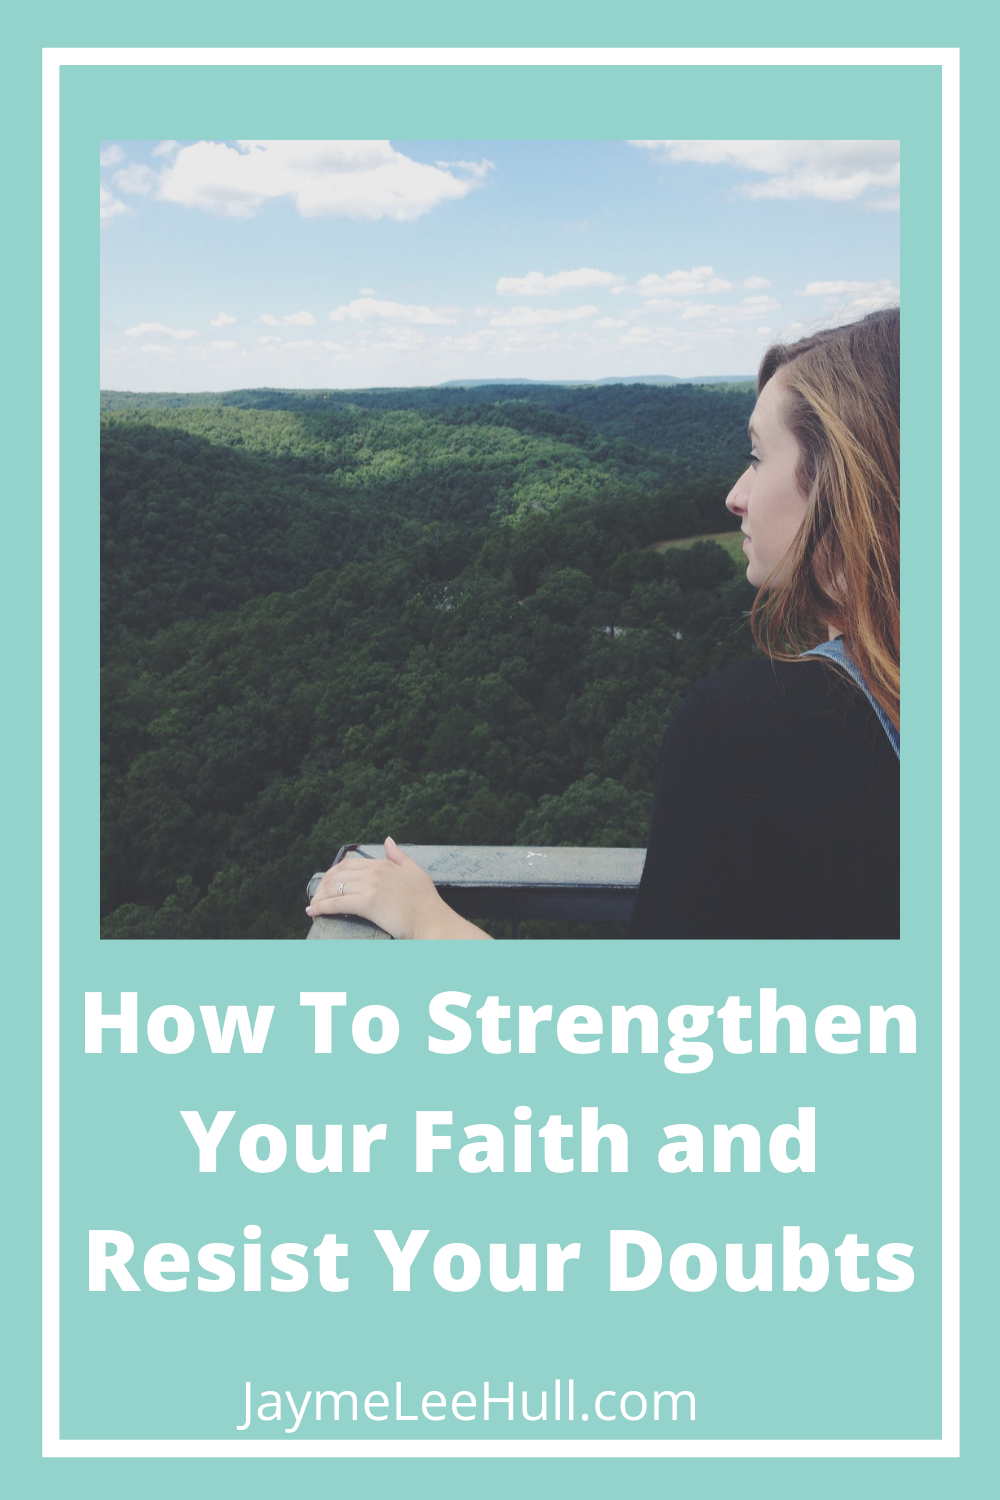 Strengthen Your Faith